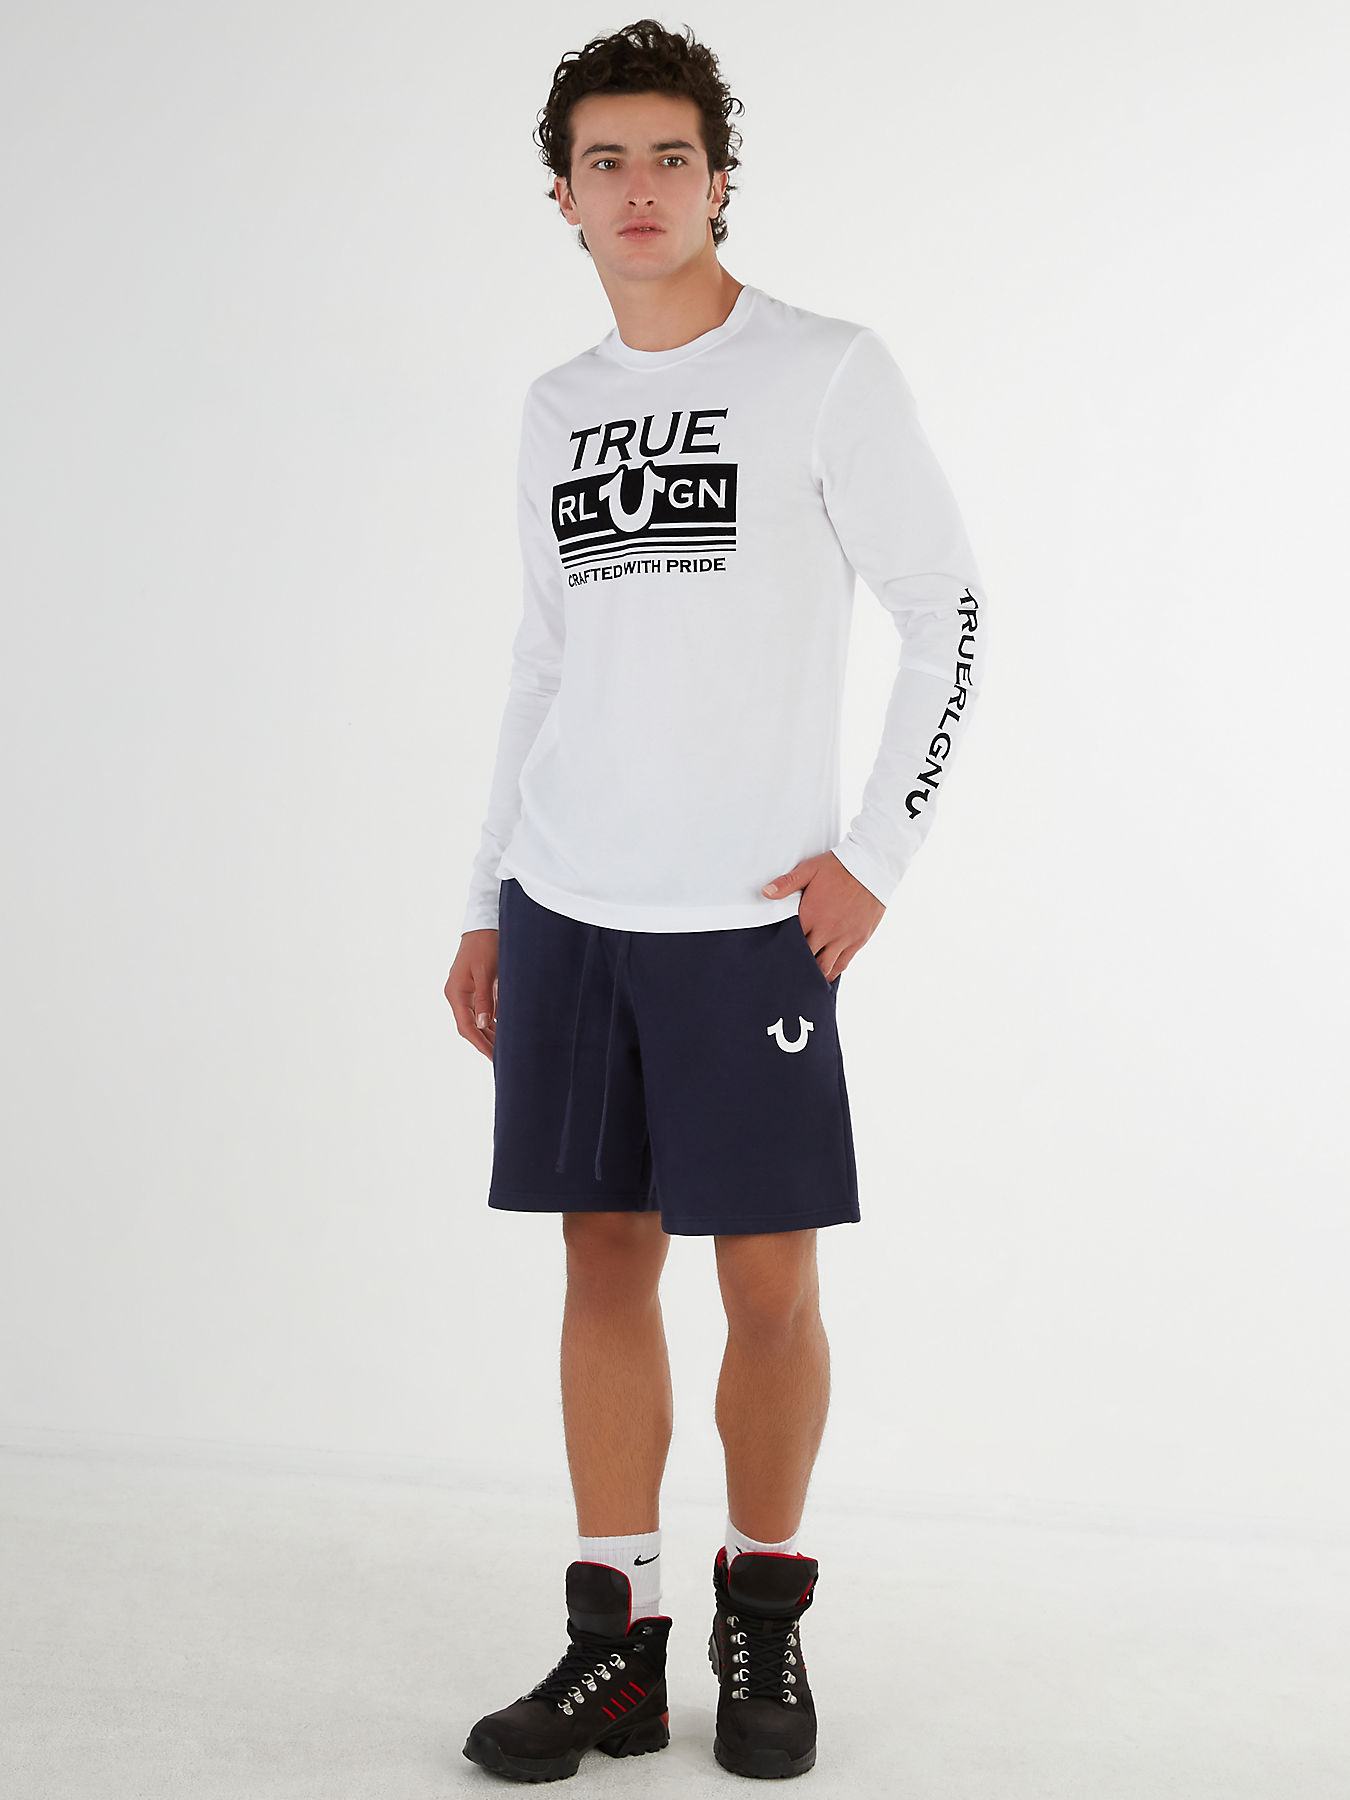 Одежда true. LUVISTRUE одежда. True Originals одежда. [Ceep]Sweat shorts m. MKI College logo Sweat shorts.